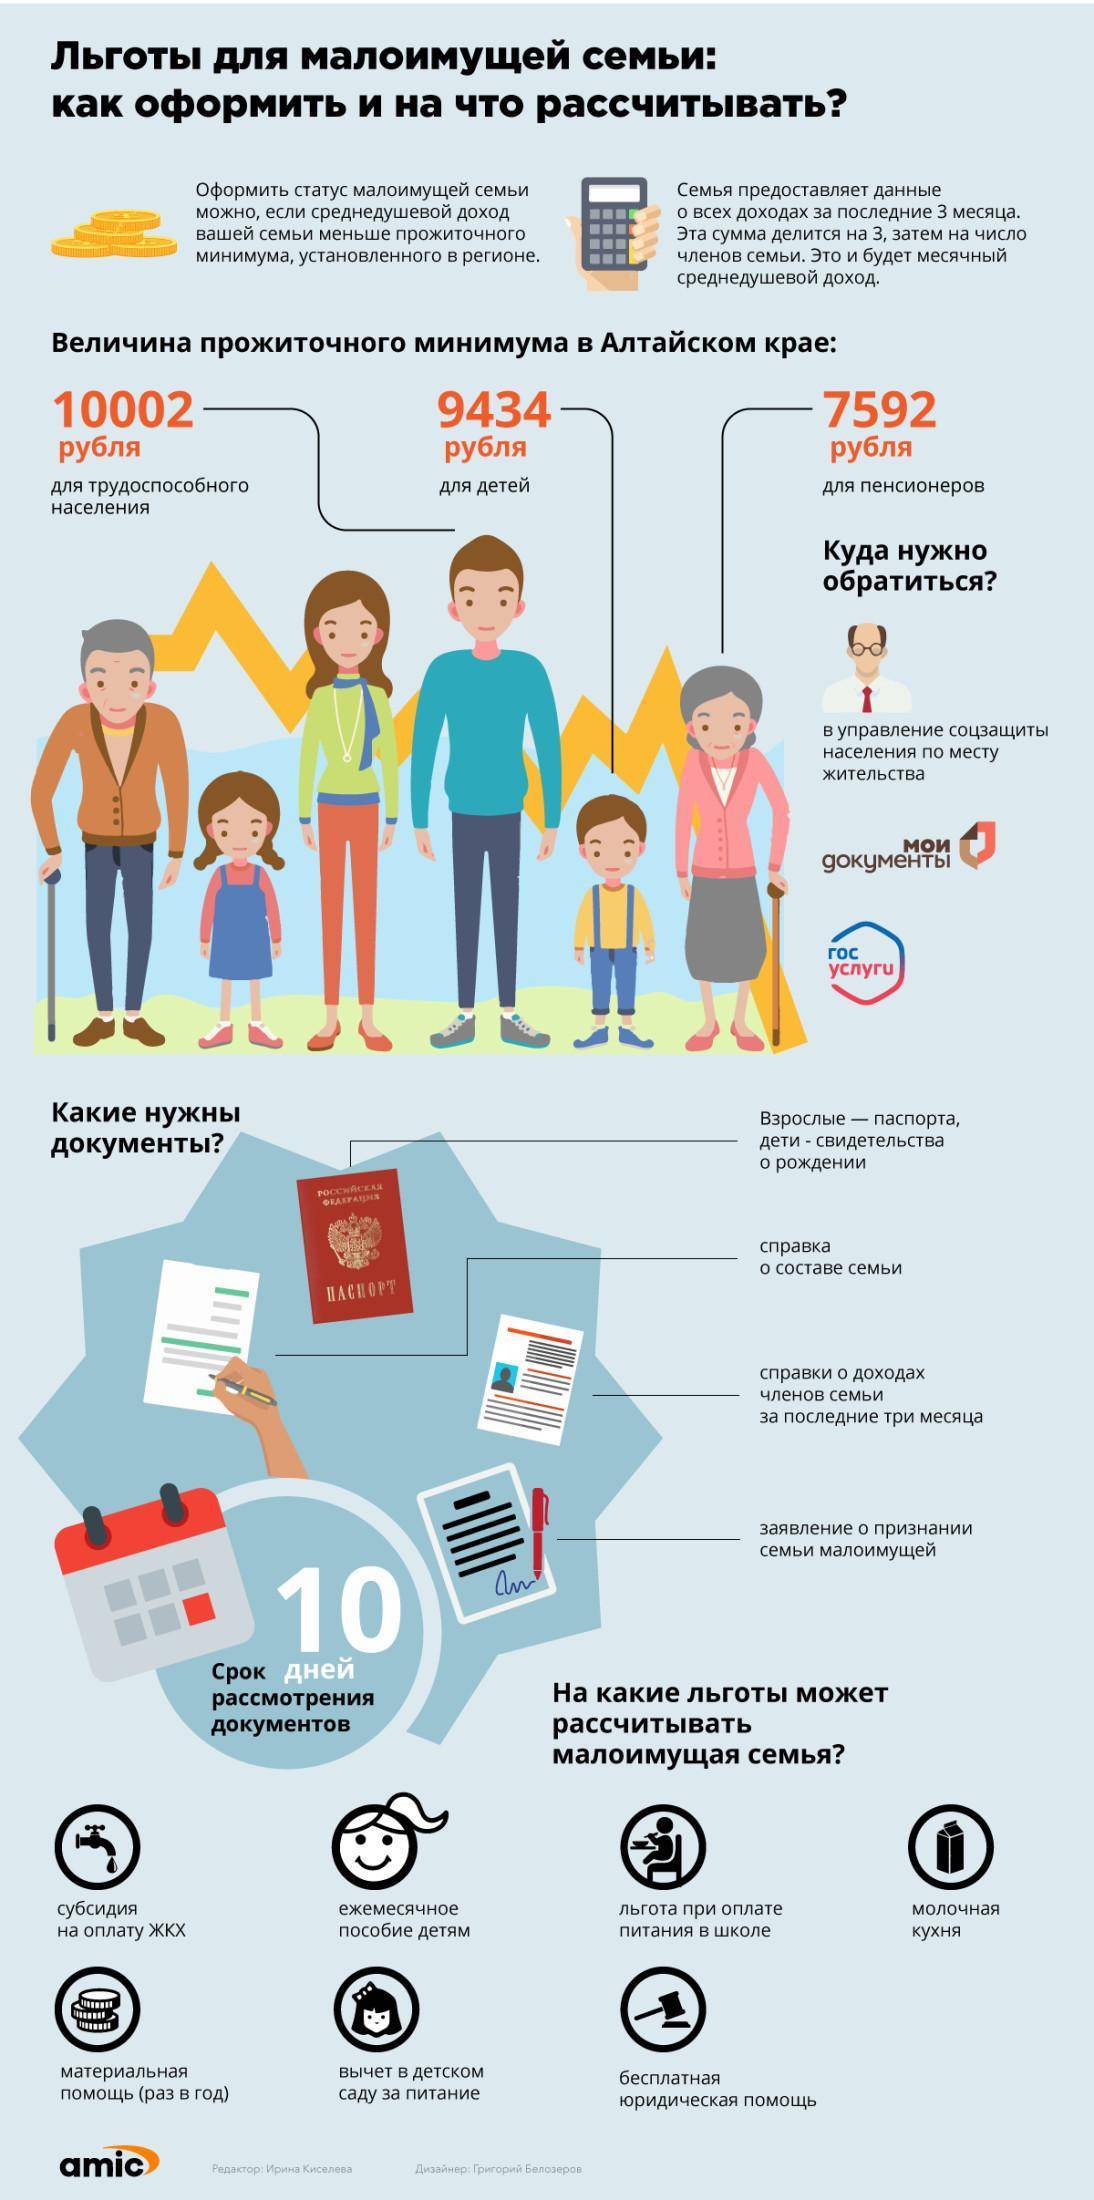 Многодетные семьи в российской федерации: перечень положенных льгот и нормативная основа их предоставления